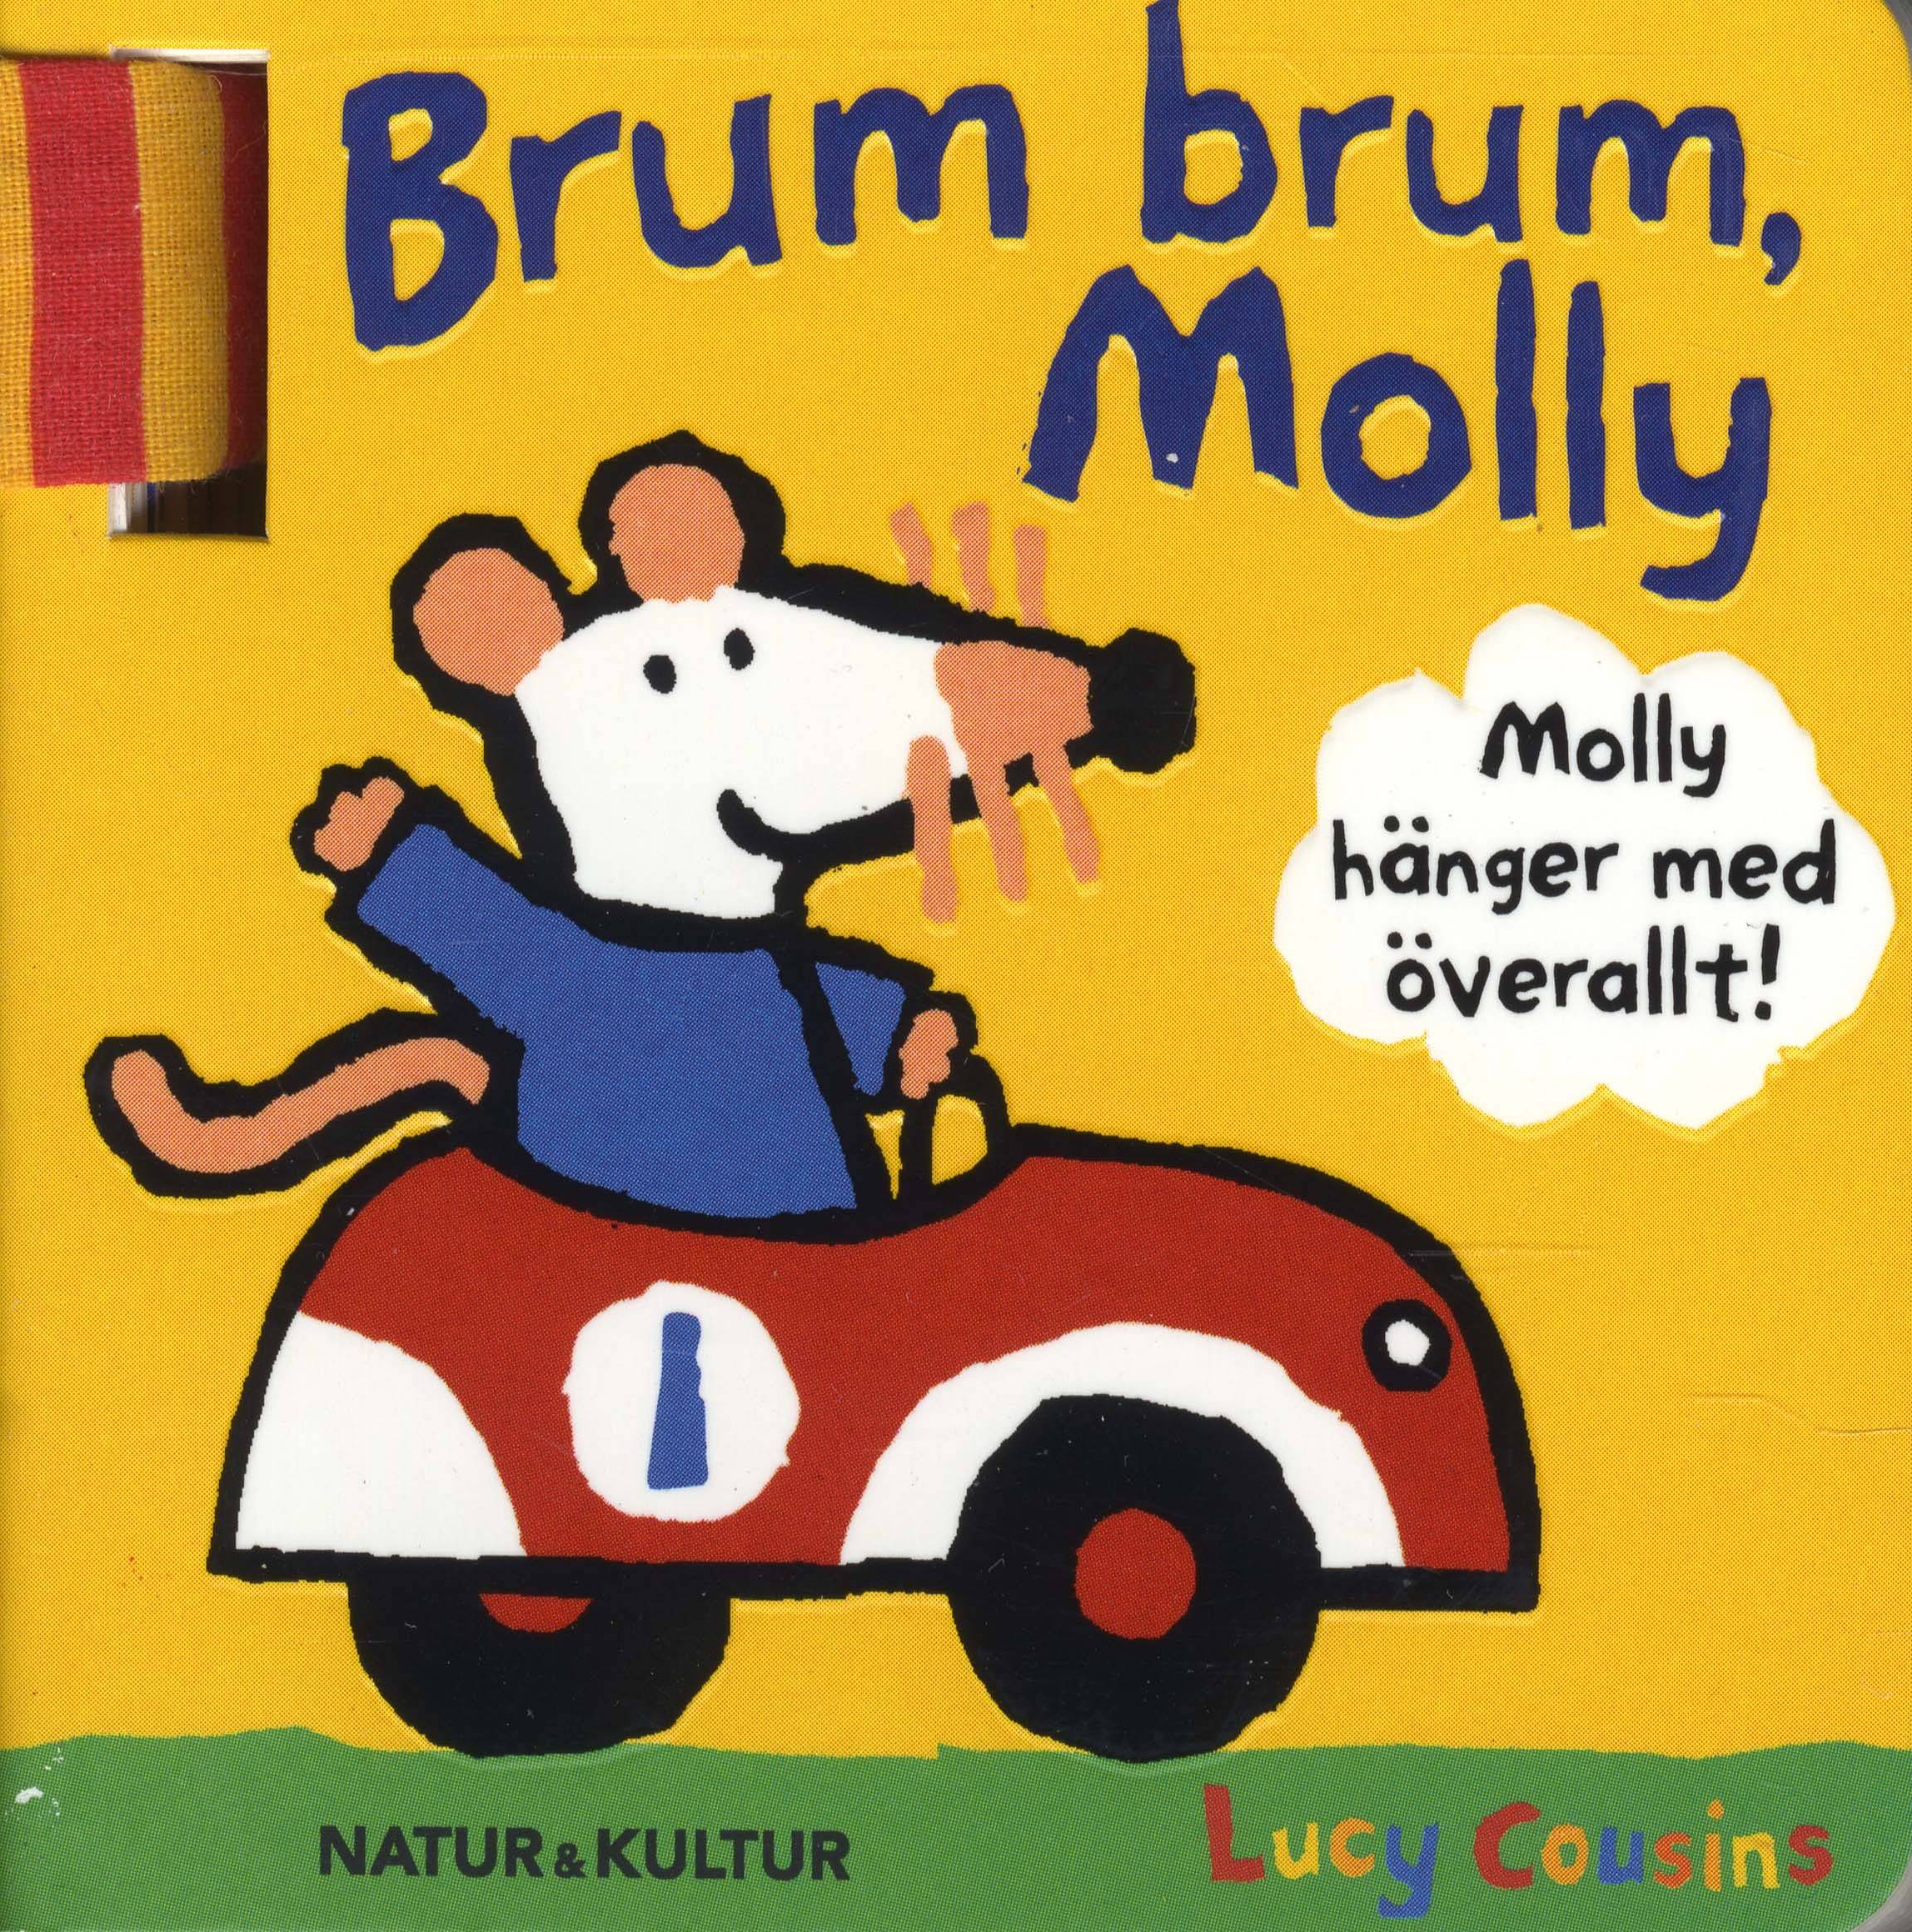 Brum brum, Molly